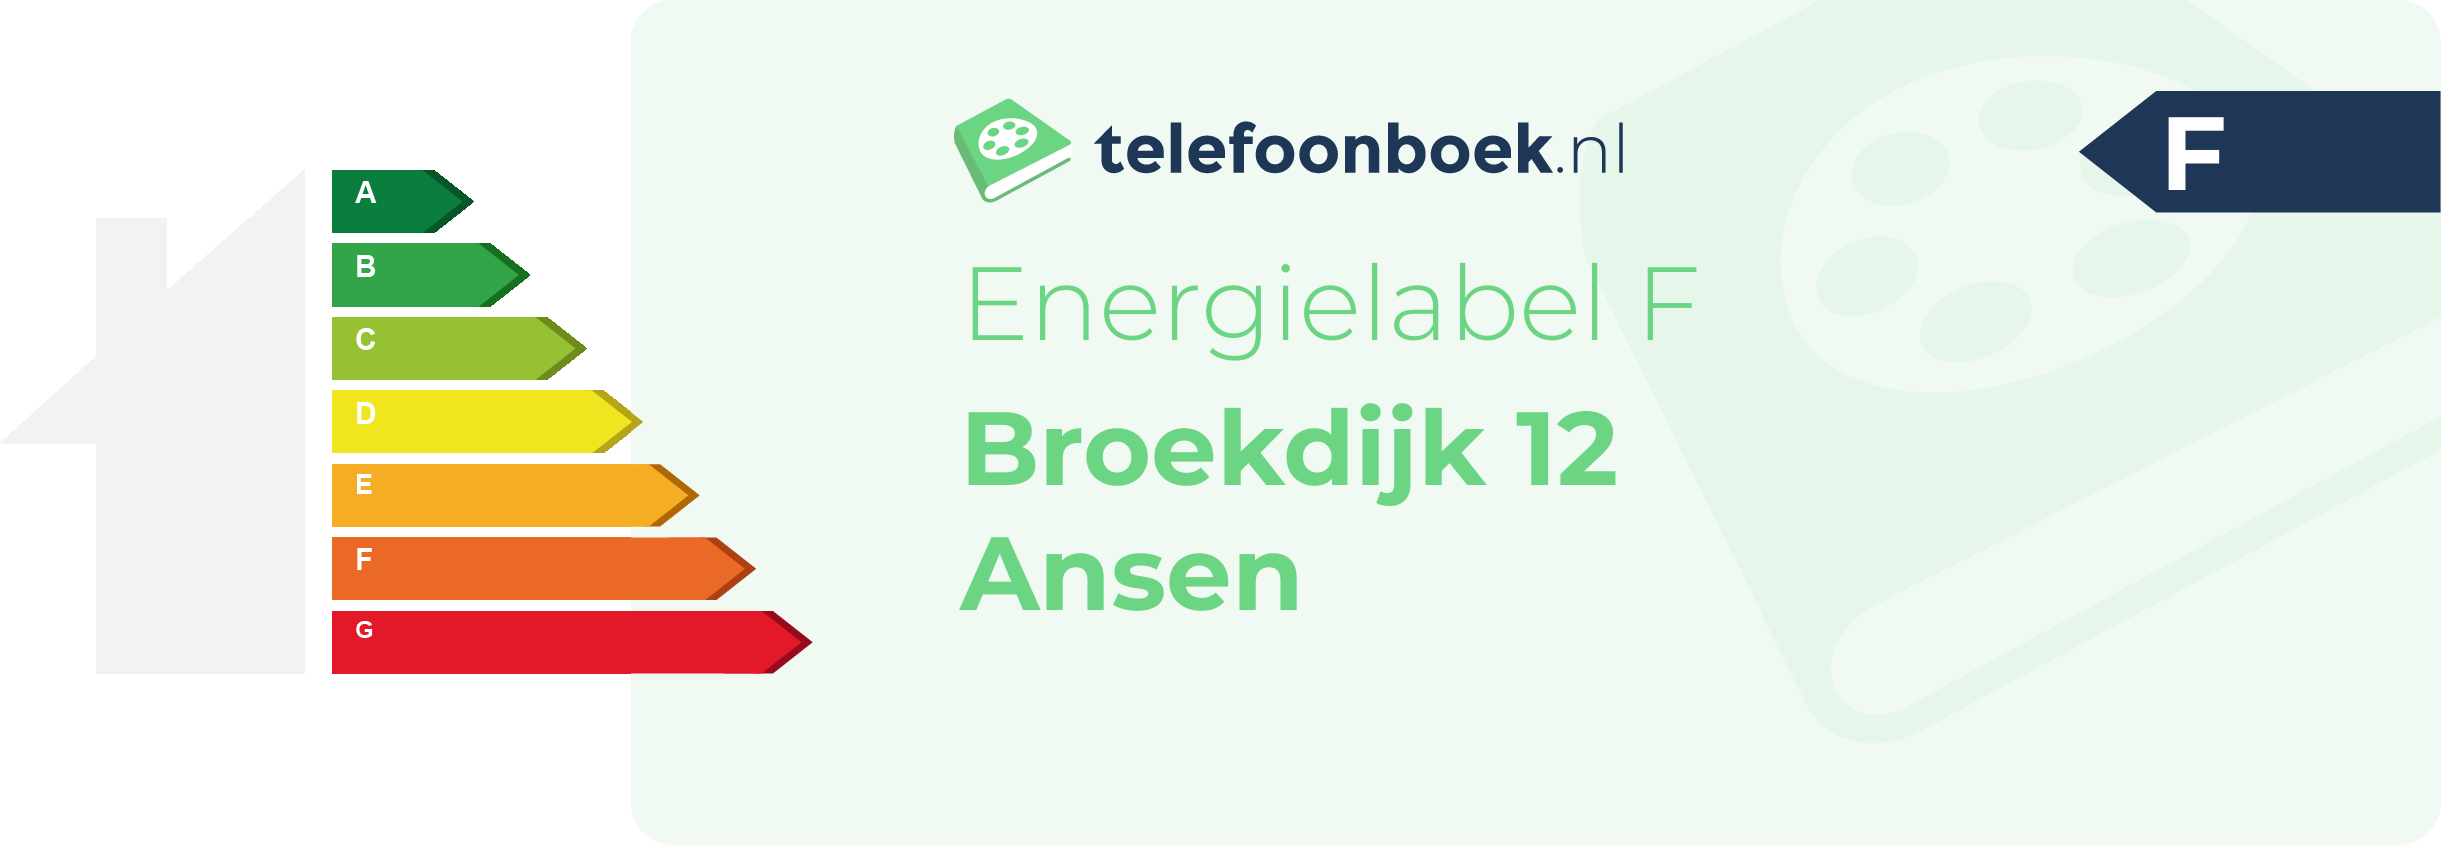 Energielabel Broekdijk 12 Ansen